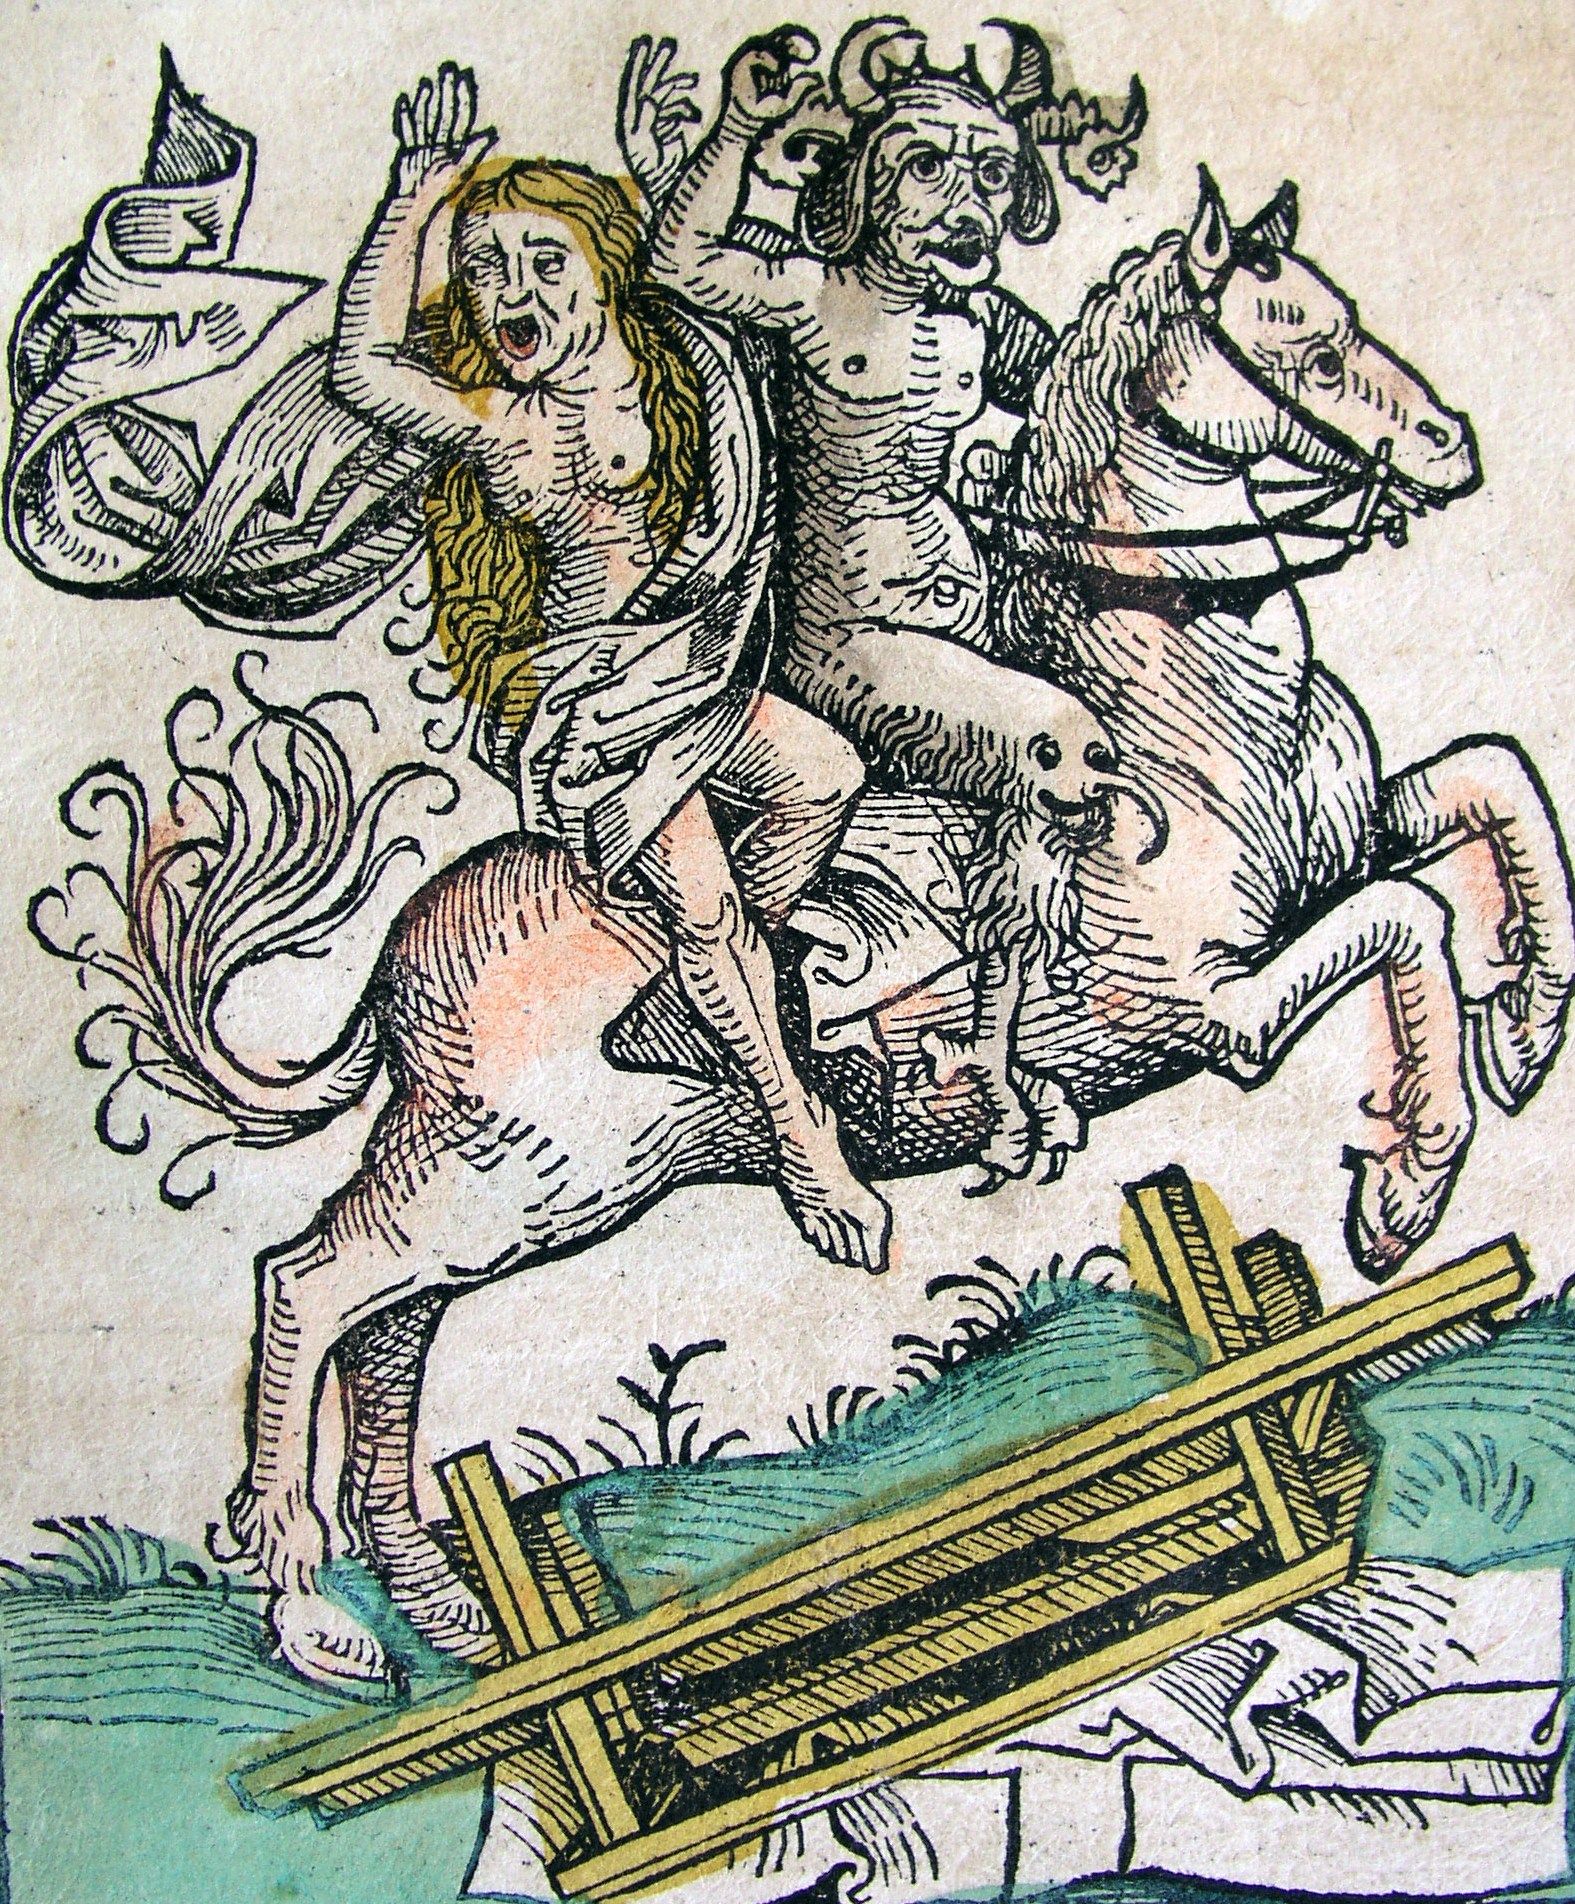 Z natury grzeszna, kobieta była wymarzoną kochanką dla diabłów i demonów. Kronika Norymberska z 1493 roku (źródło: domena publiczna).